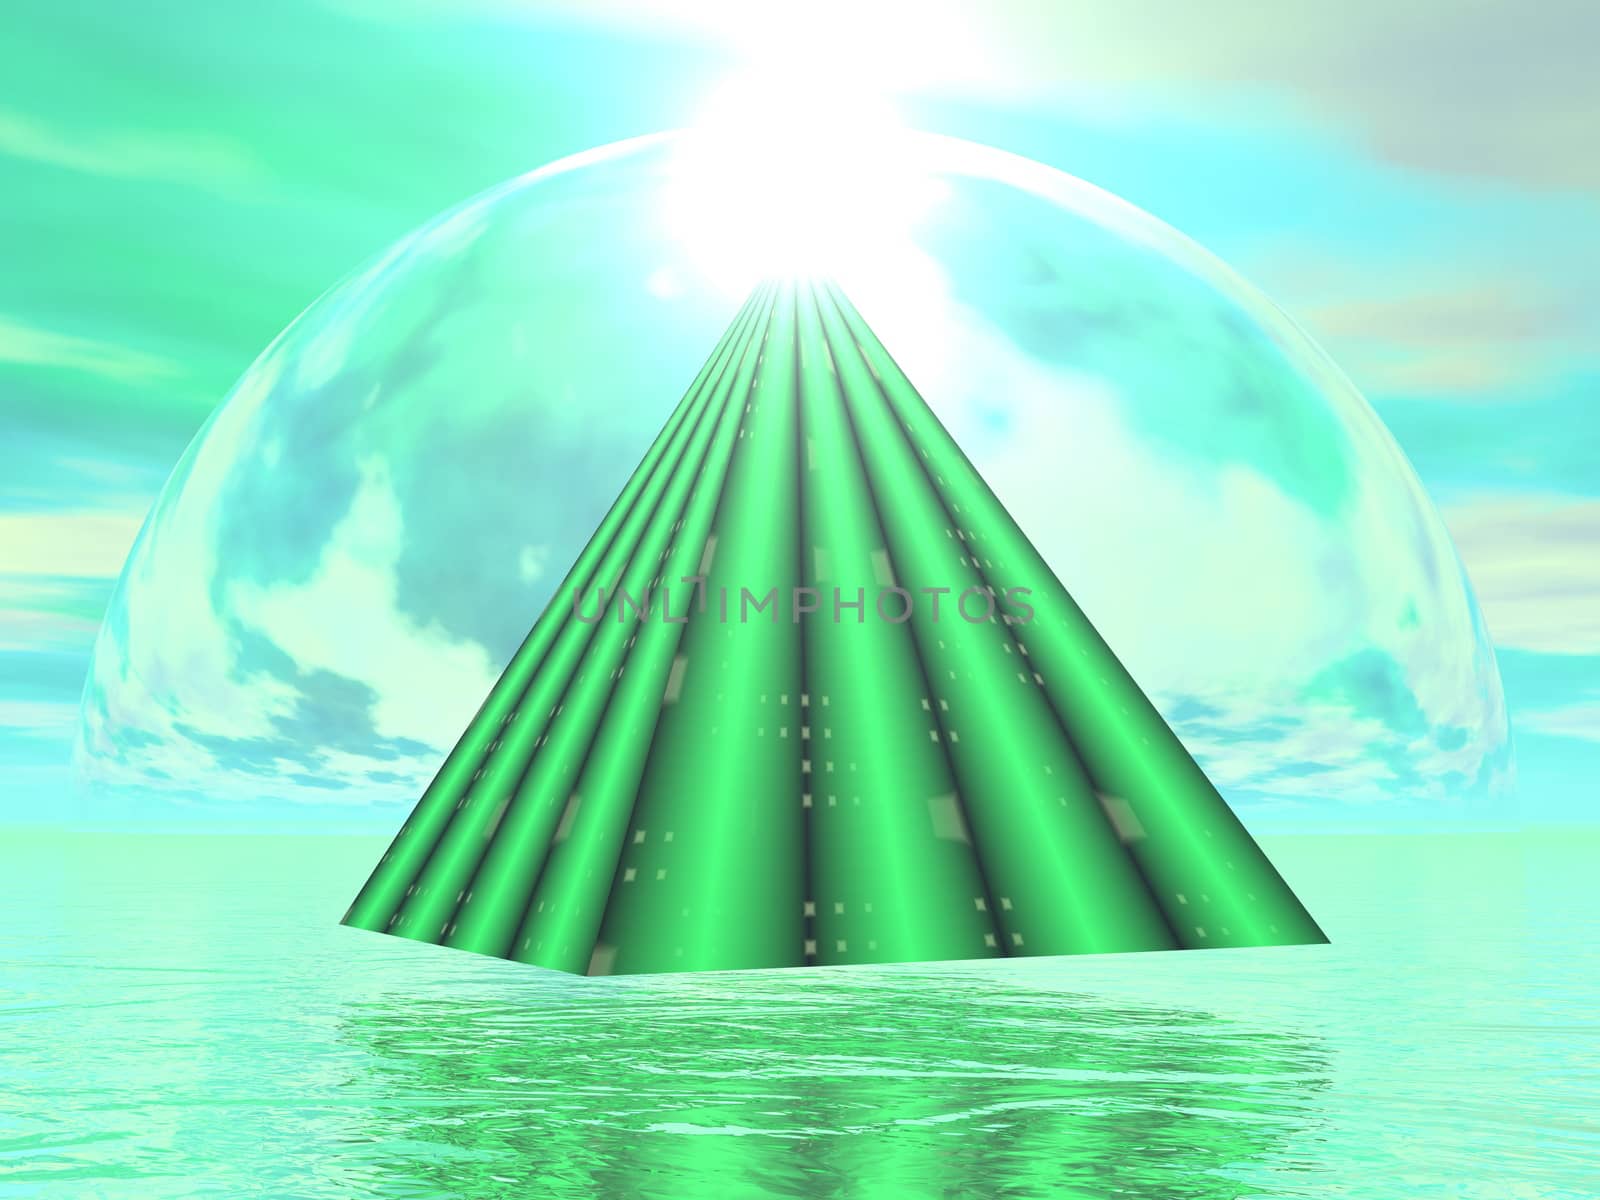 Mystical pyramid - 3D render by Elenaphotos21